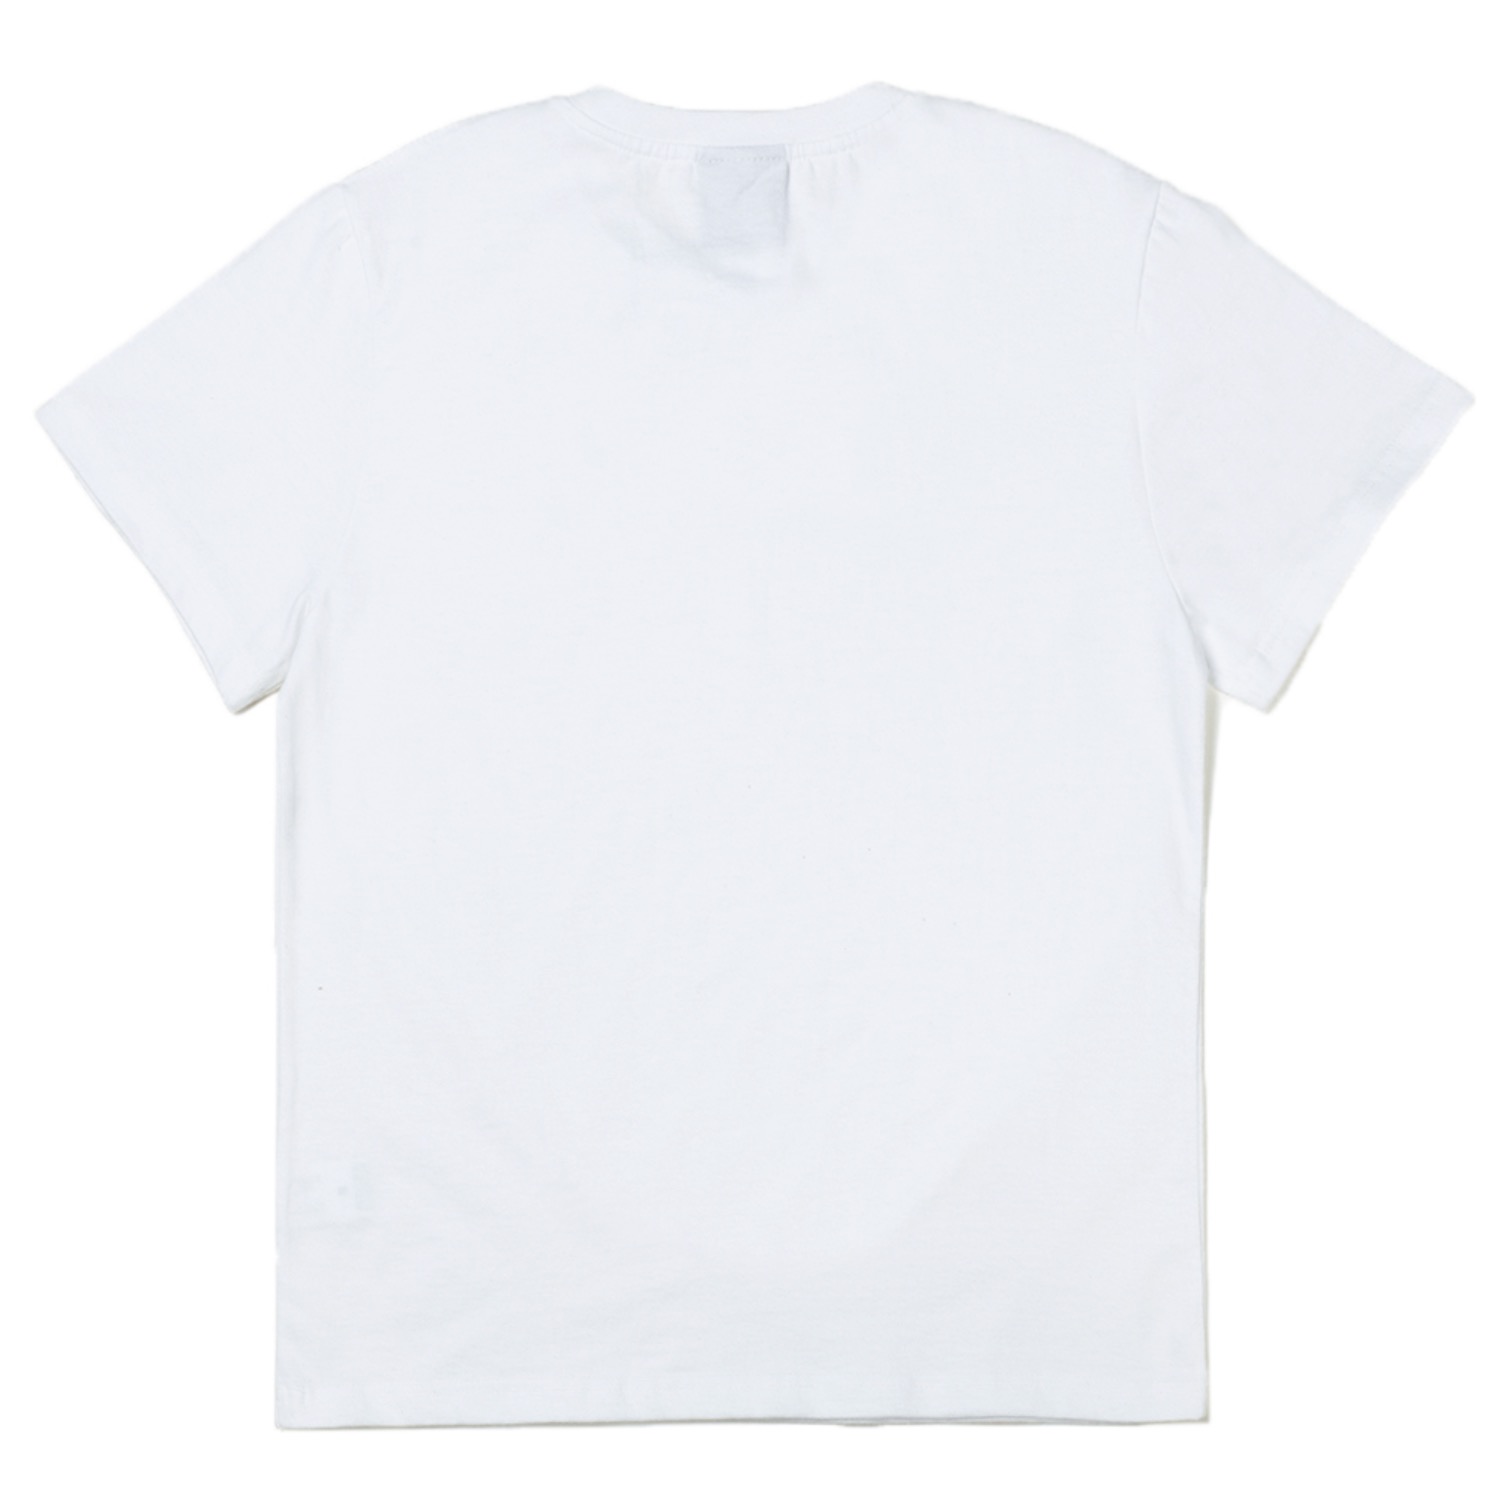 갓 반팔티셔츠Gat short sleeve T-shirts (white)